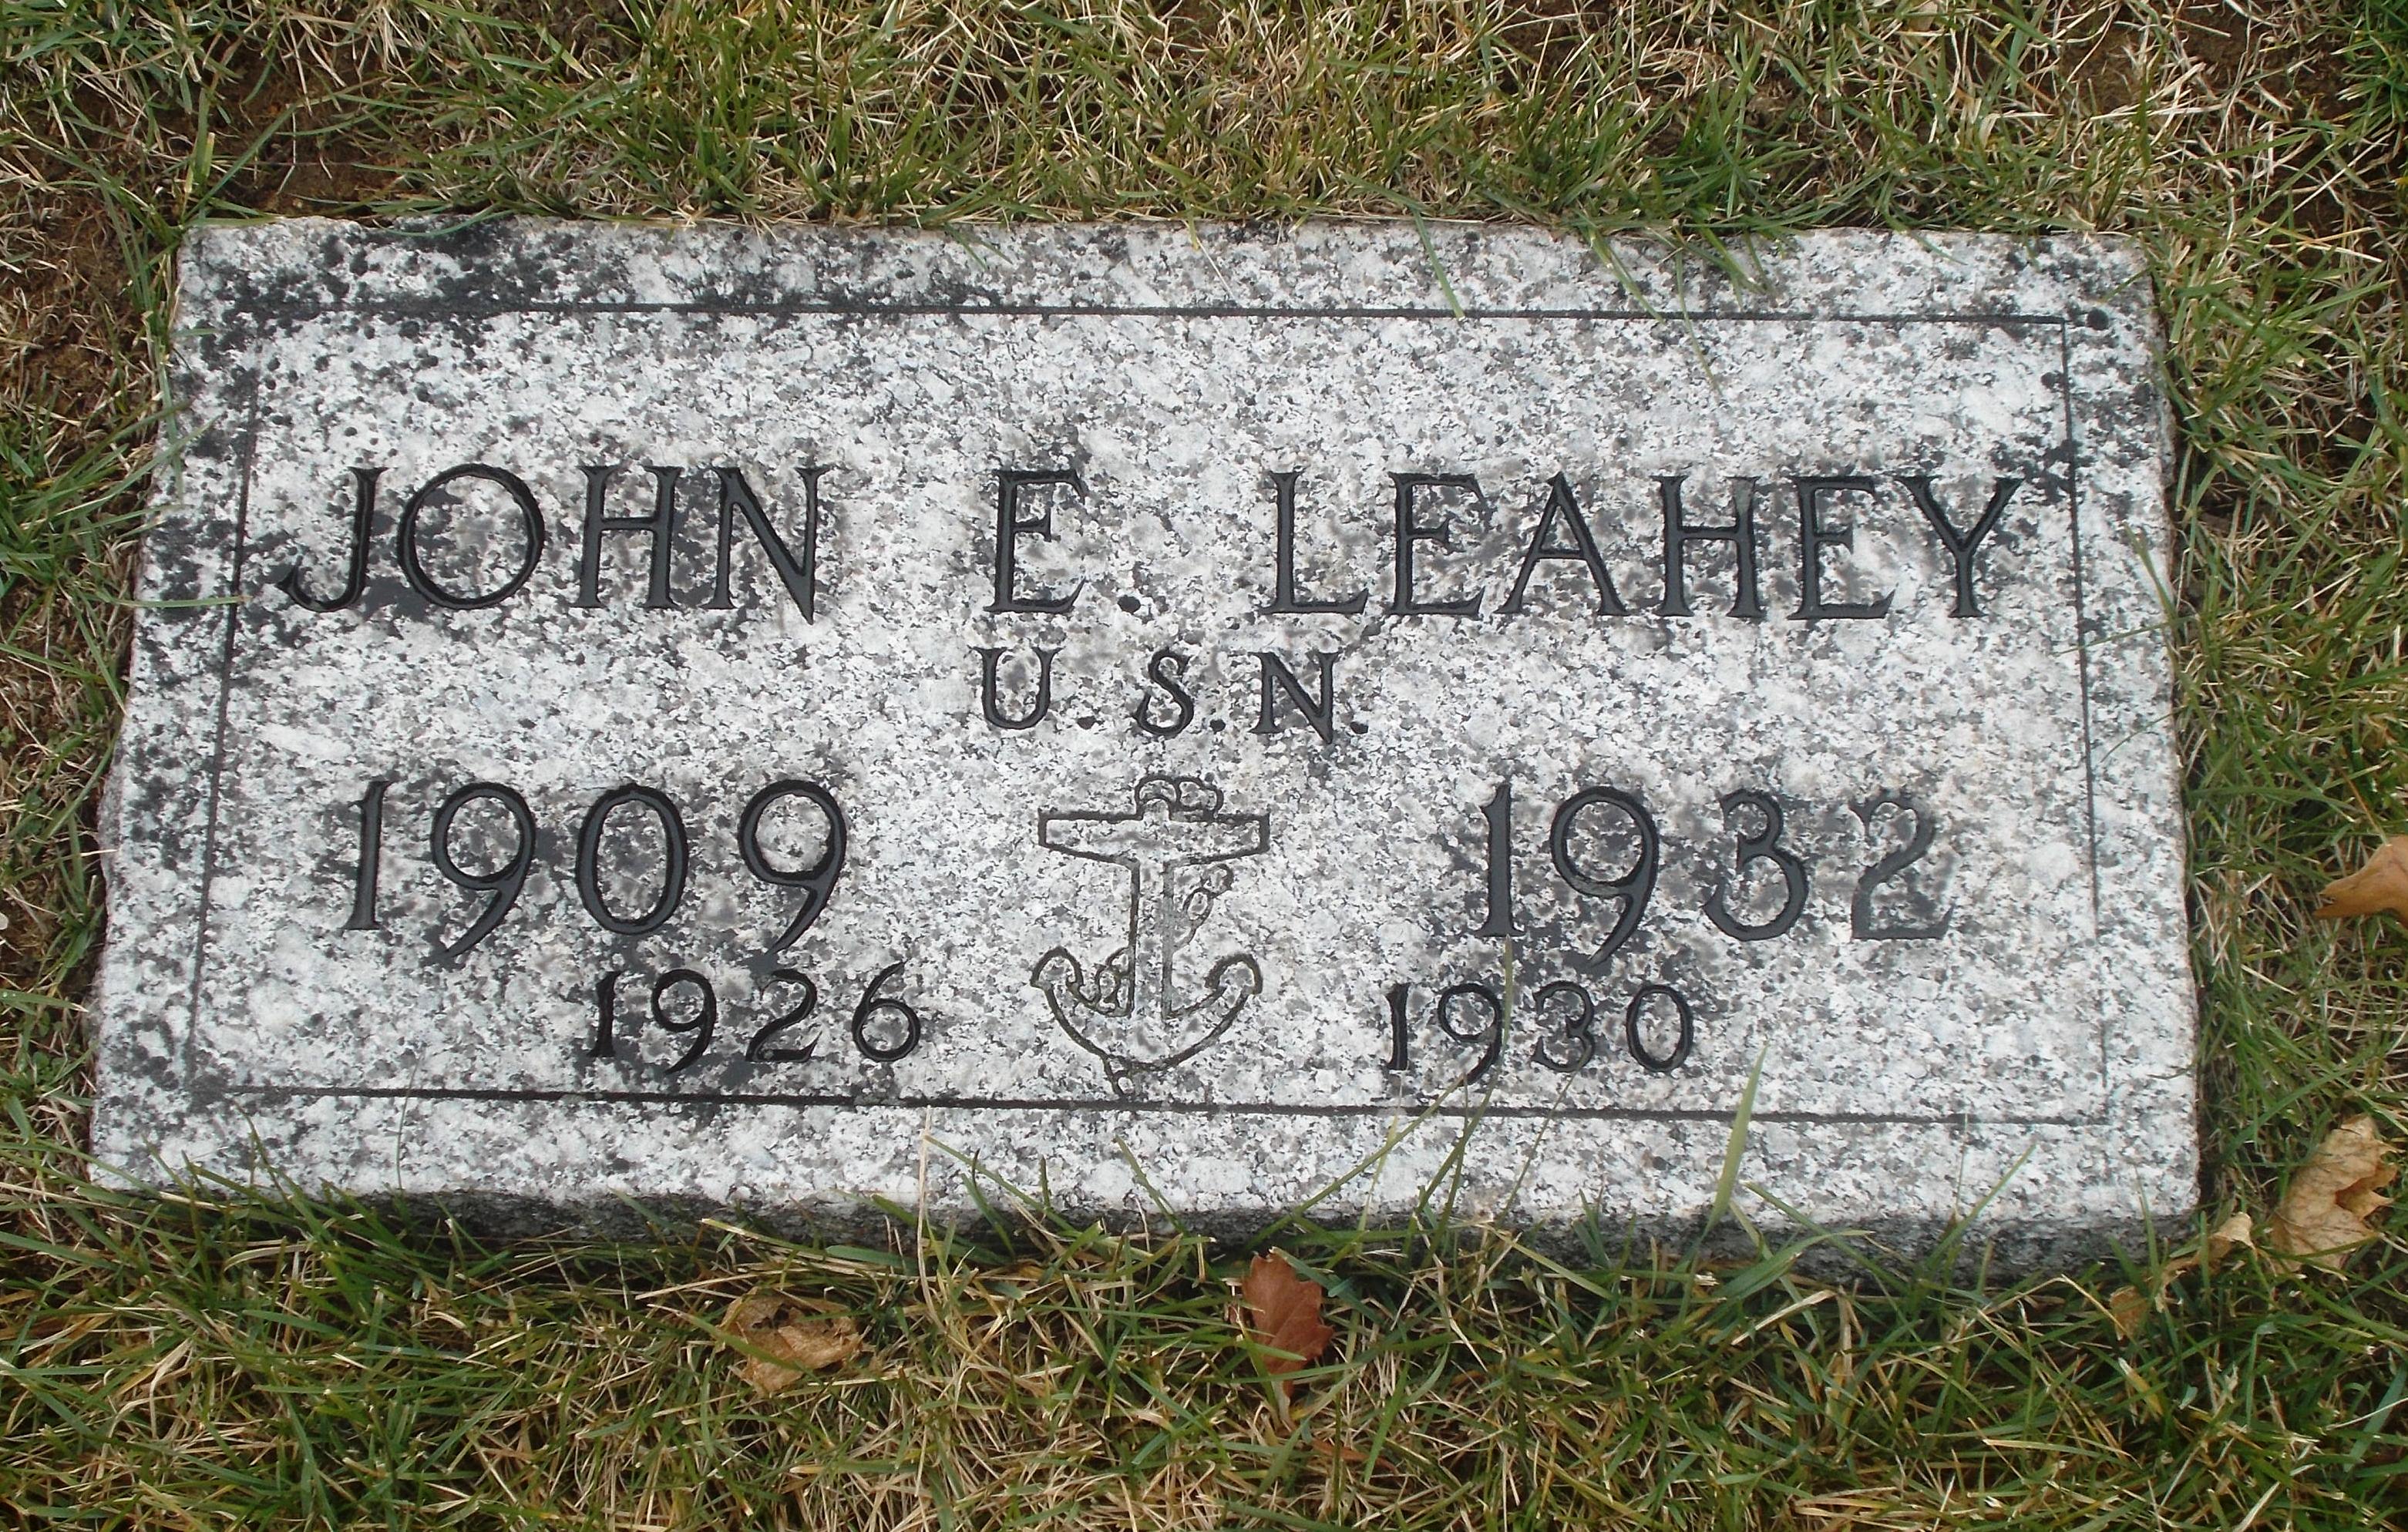 John E Leahey